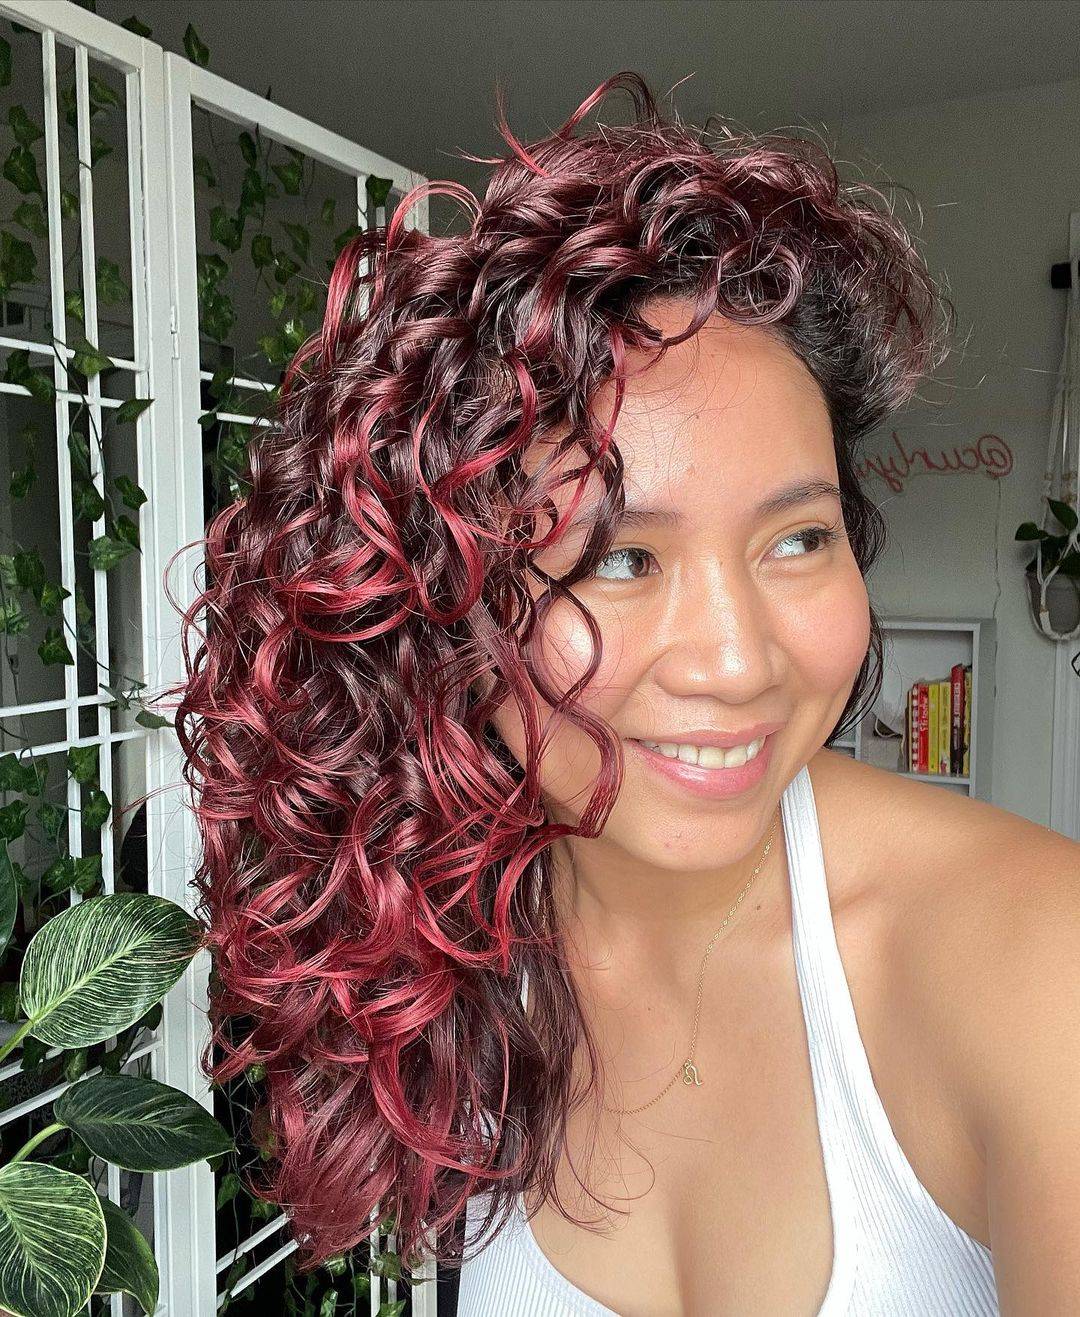 Burgundy hair color 233 burgundy hair color | burgundy hair color for women | burgundy hair color highlights Burgundy Hair Color